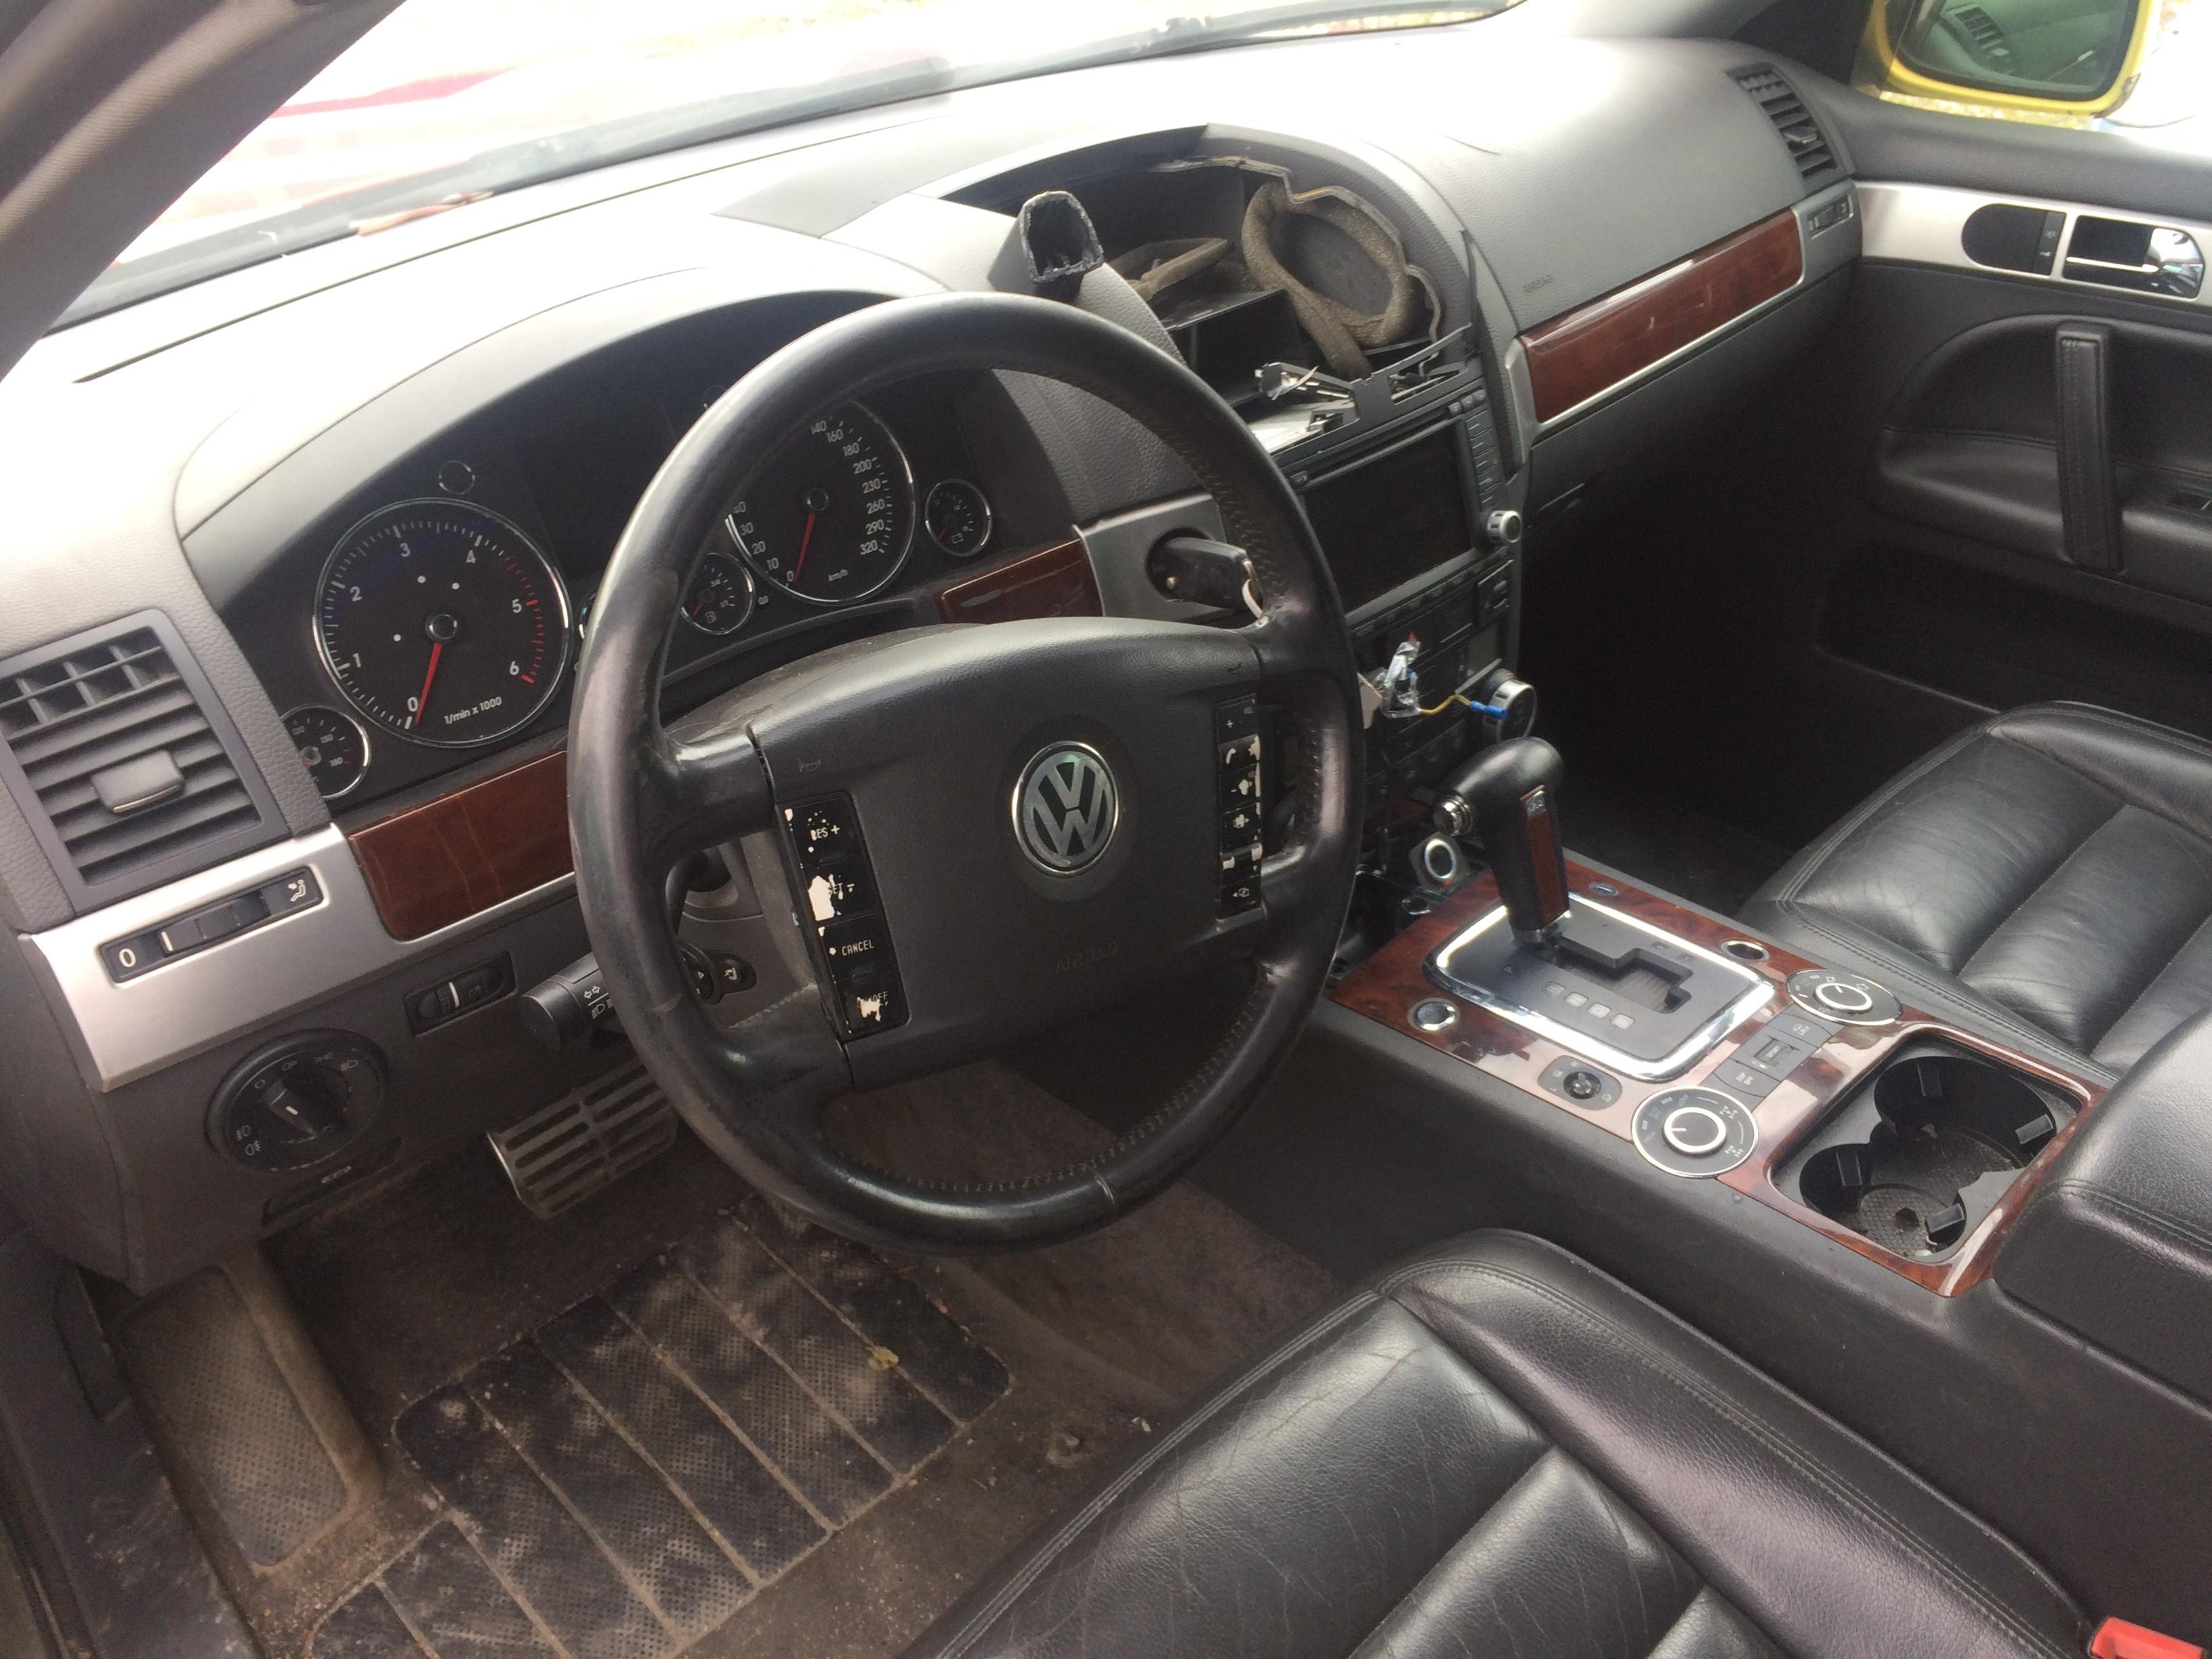 Подержанные Автозапчасти Volkswagen TOUAREG 2003 5.0 автоматическая напрямик 4/5 d. желтый 2018-7-13